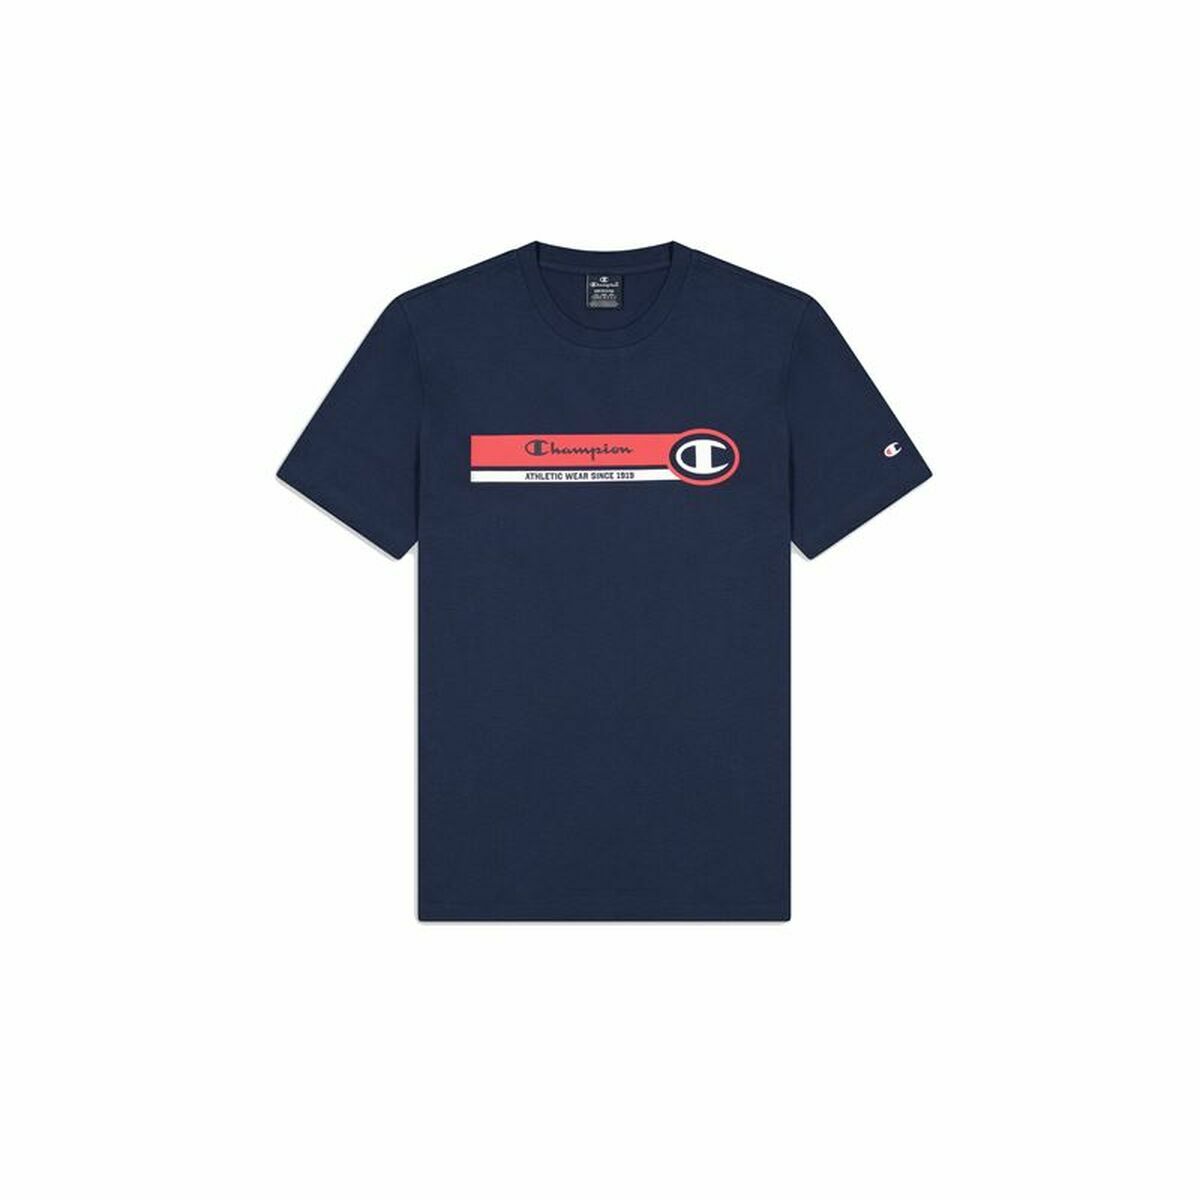 Osta tuote Miesten T-paita Champion Crewneck Sininen (Koko: M) verkkokaupastamme Korhone: Urheilu & Vapaa-aika 20% alennuksella koodilla VIIKONLOPPU